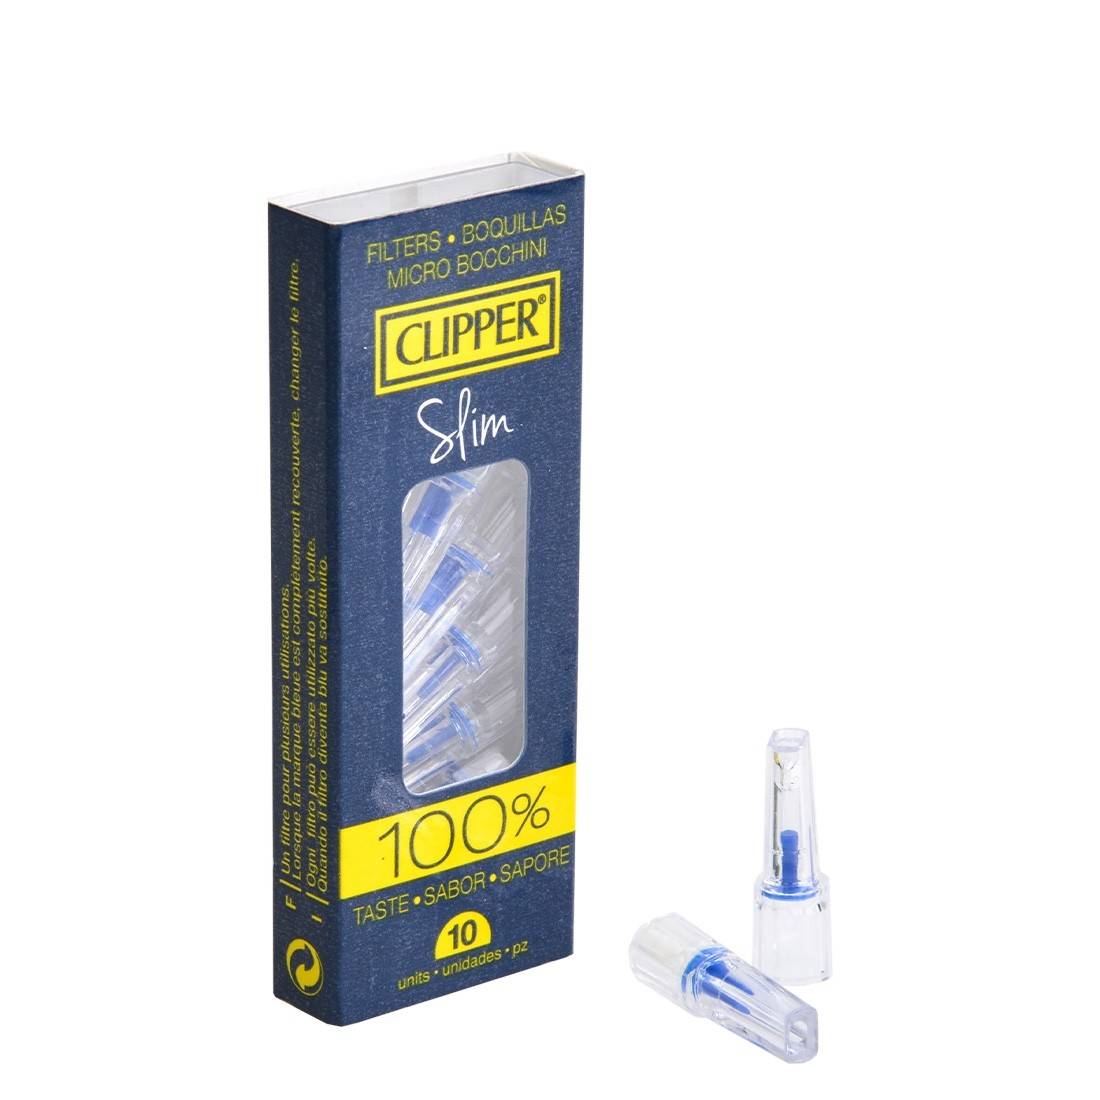 filtres anti-nicotine clipper slim 